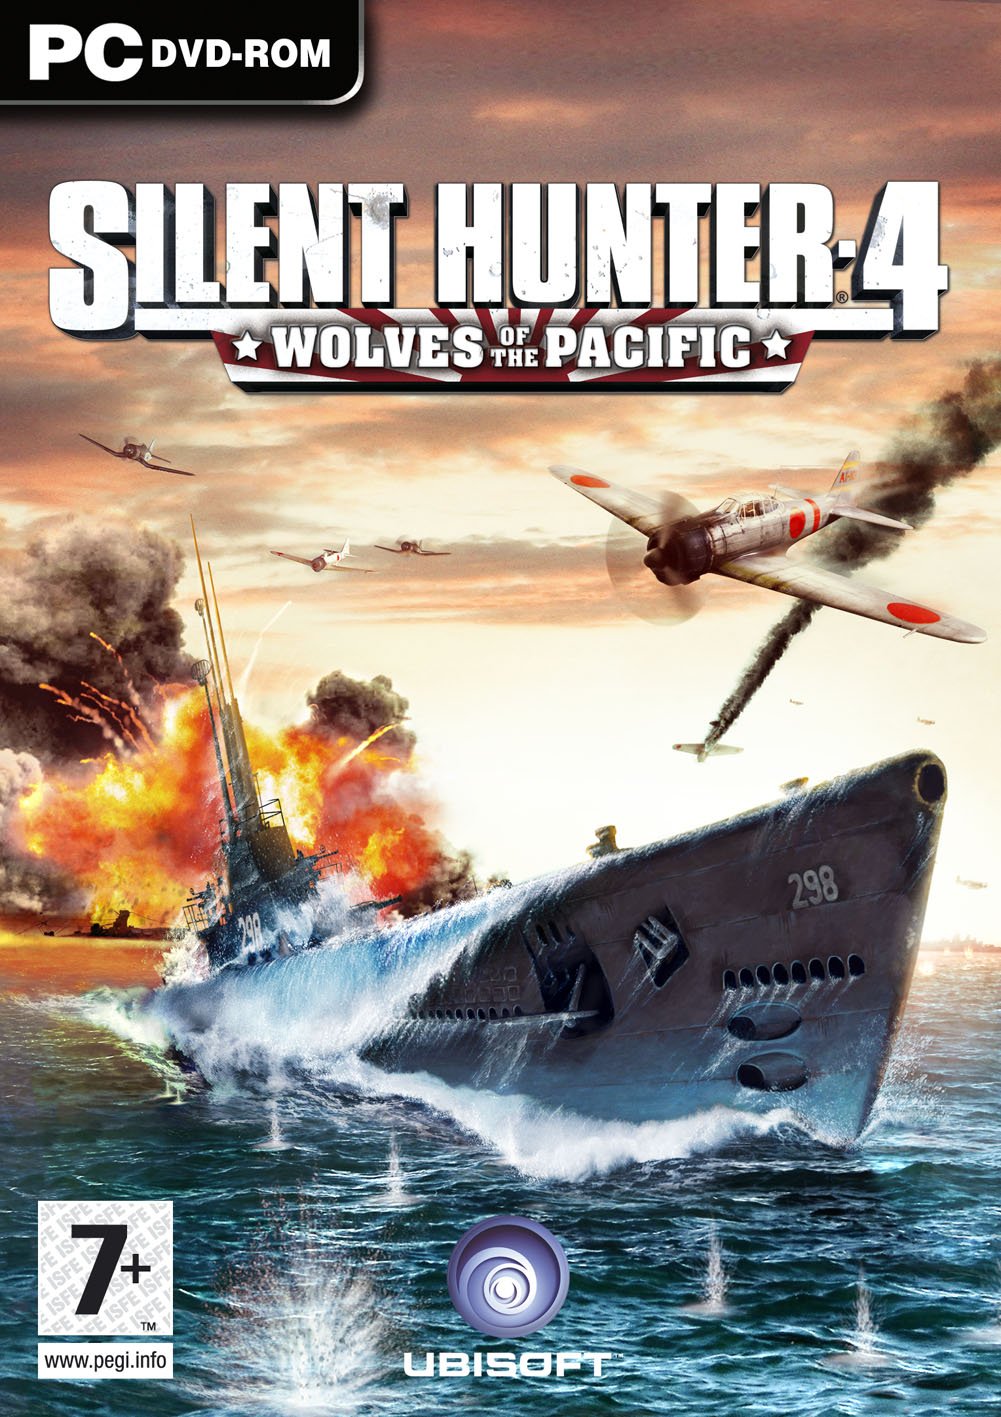 jaquette du jeu vidéo Silent Hunter 4: Wolves of the Pacific